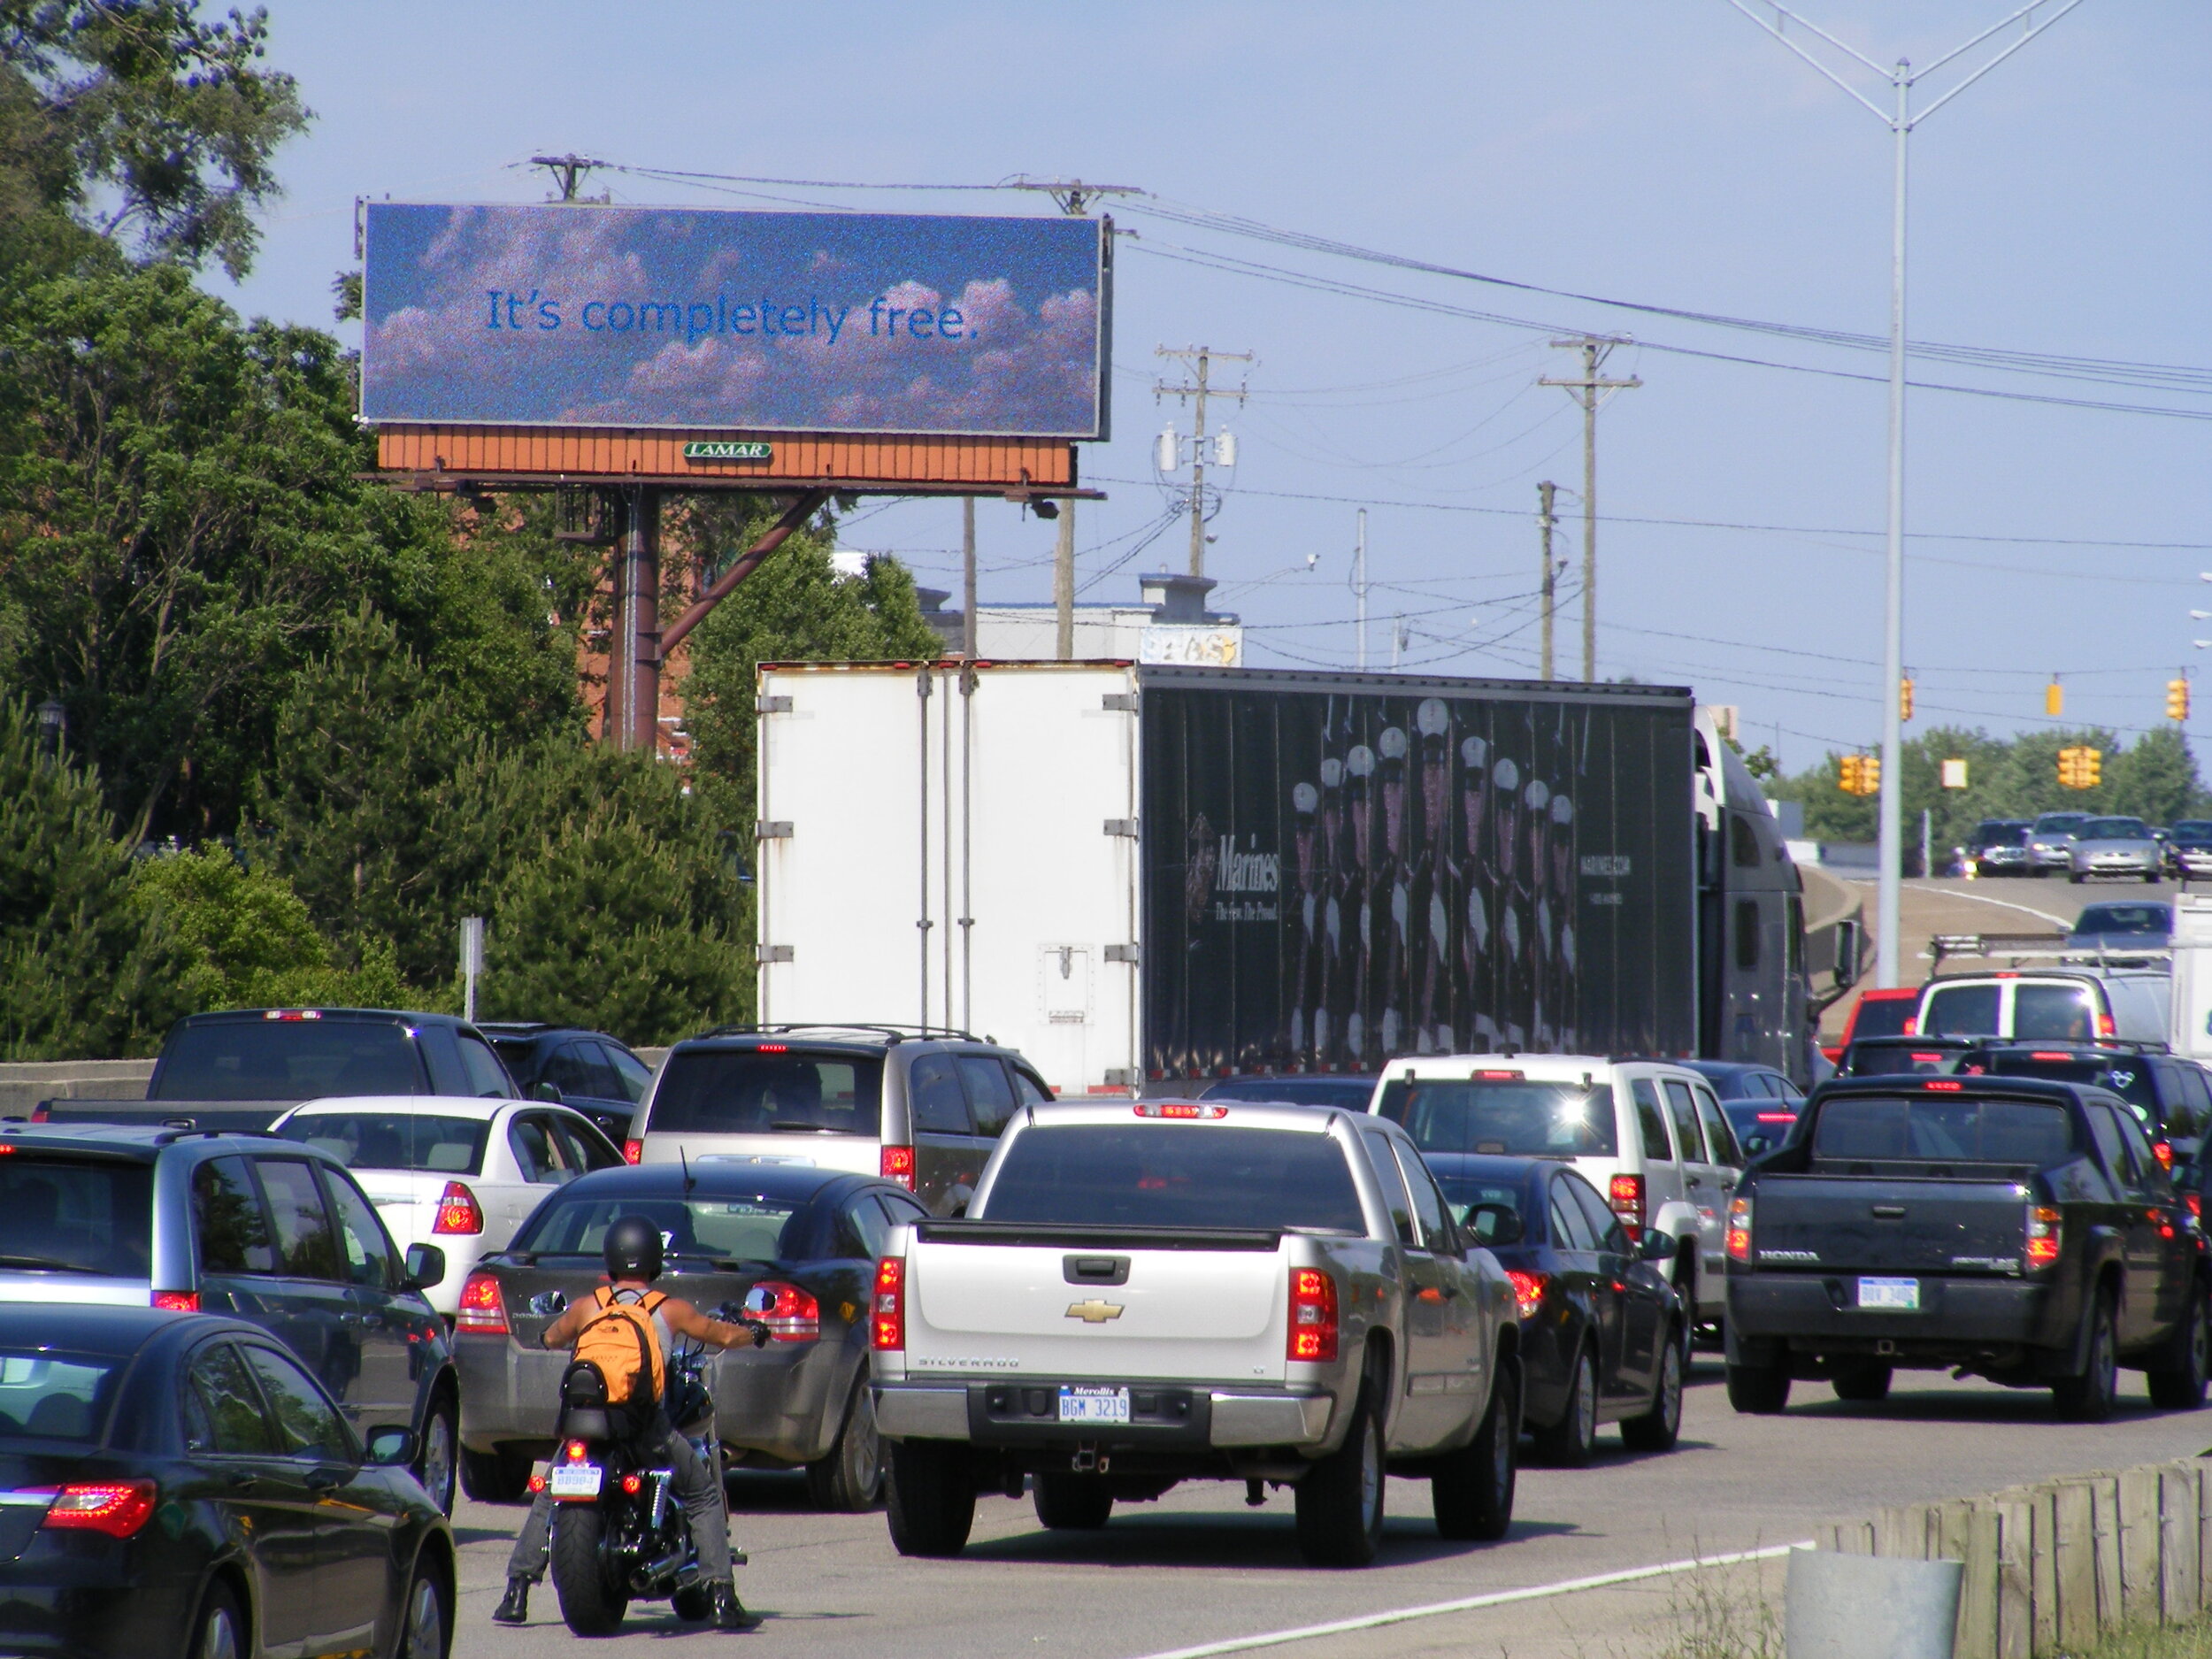 detroit-billboard-art-project-2012-molly-dierks-2_7664163508_o.jpg